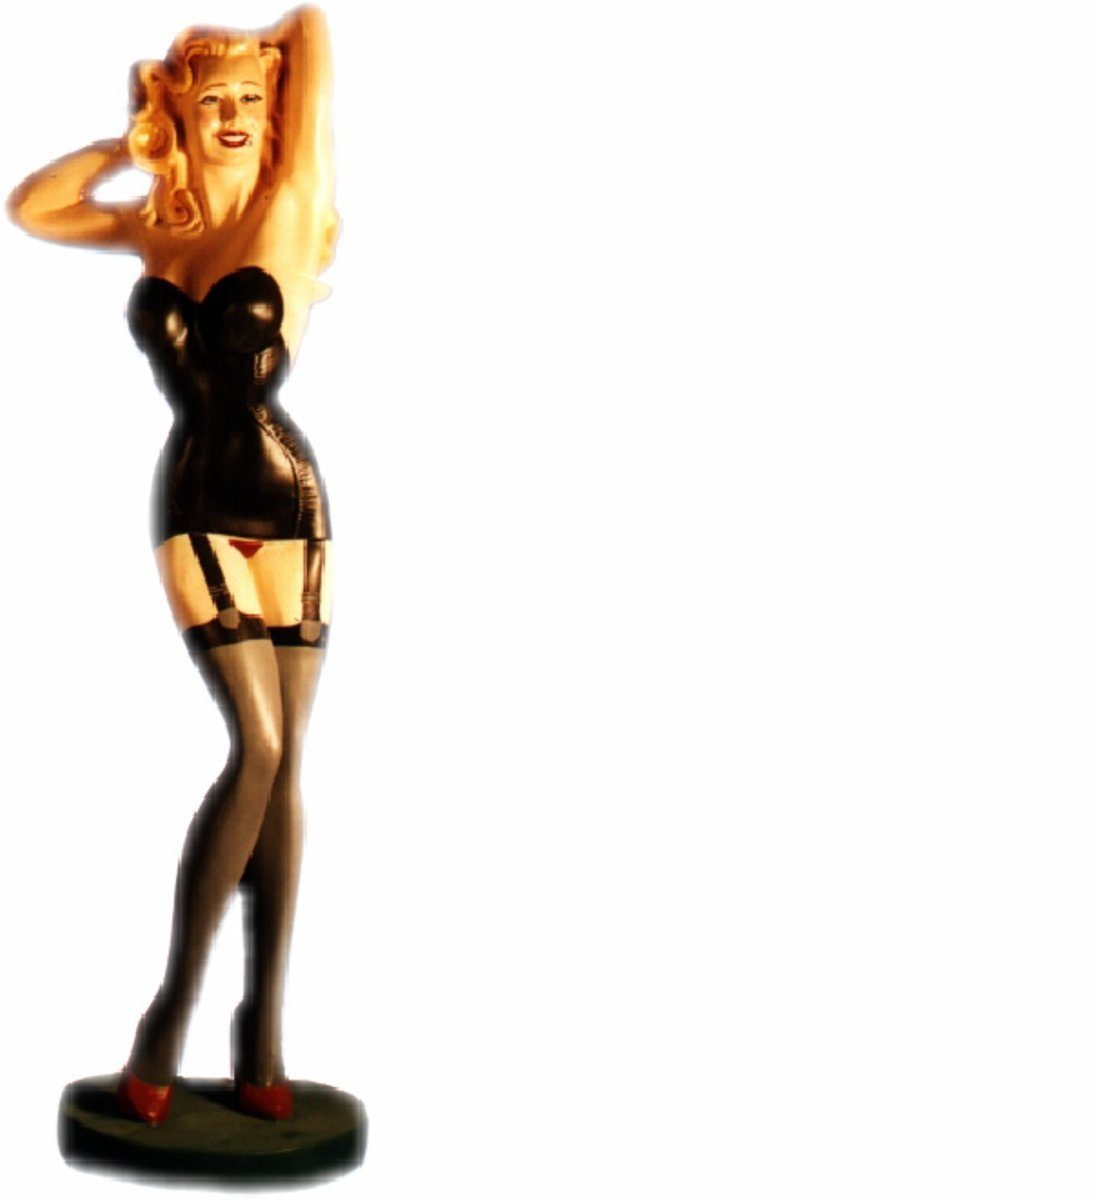 Design US JVmoebel Sexy Statue Dekoobjekt Dekoration Deko Skulptur Women Figur Figuren